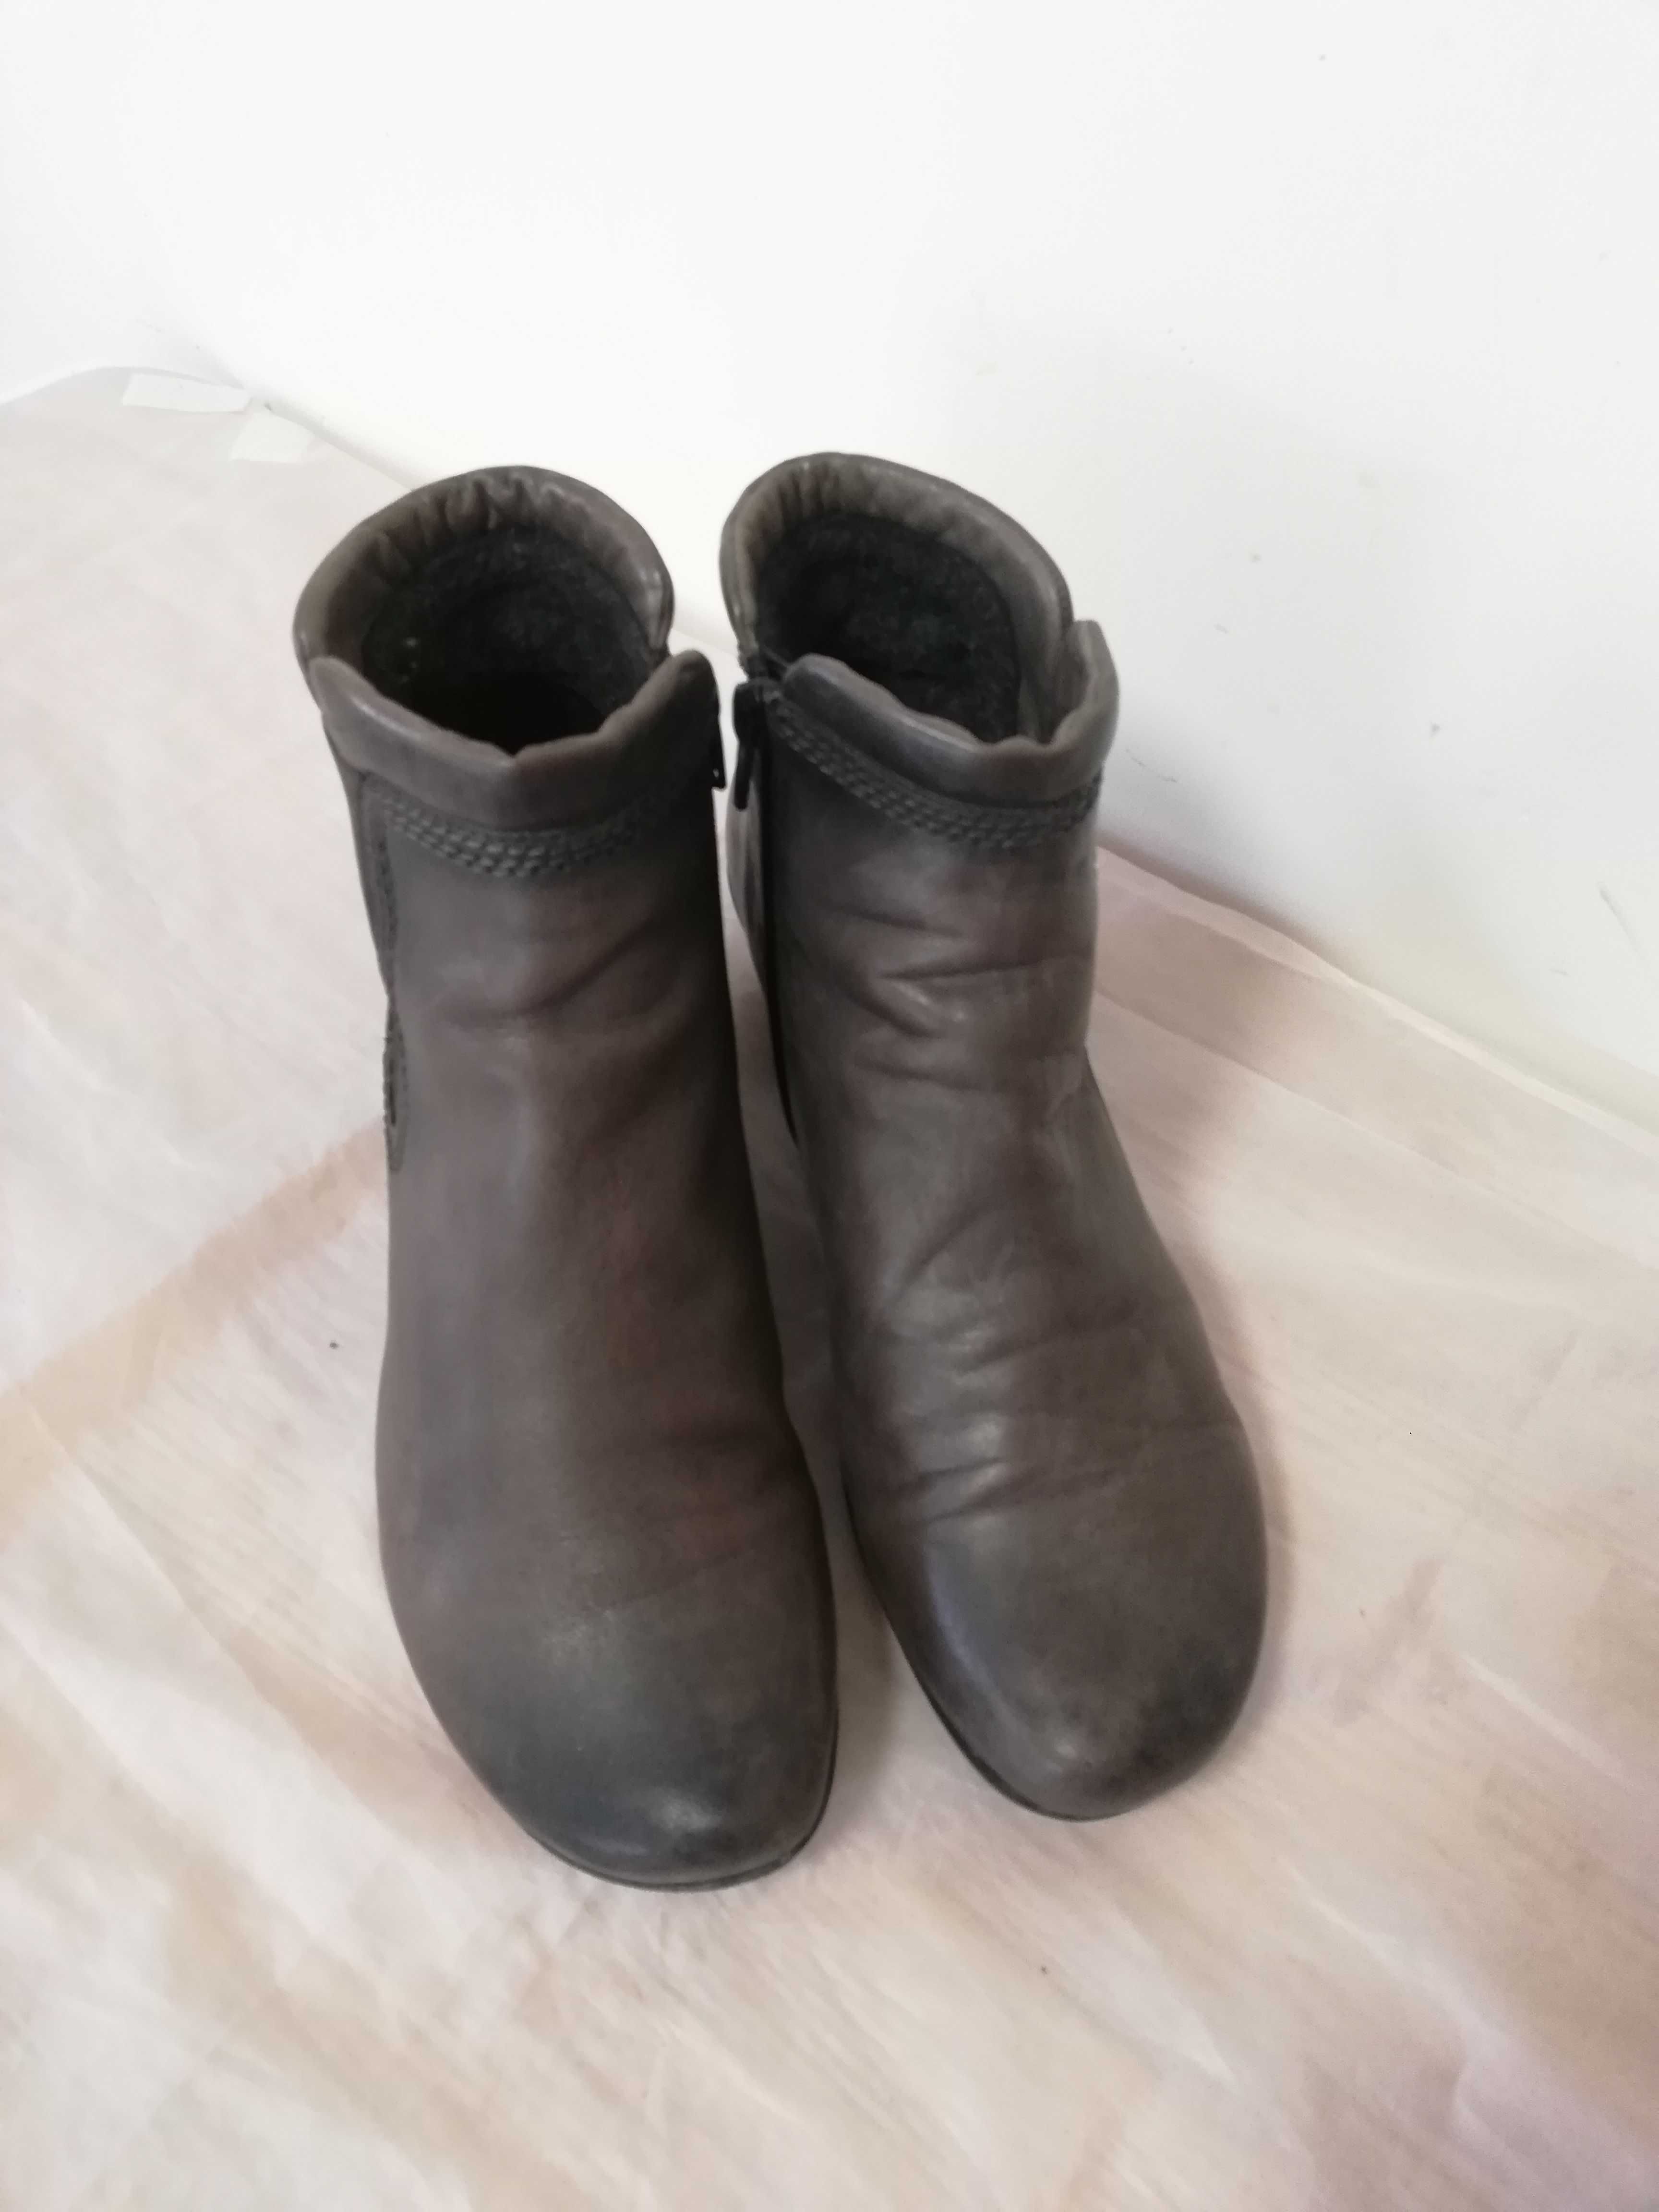 Buty botki skórzane Gabor UK 7 r. 41 , wkł 26,5 cm